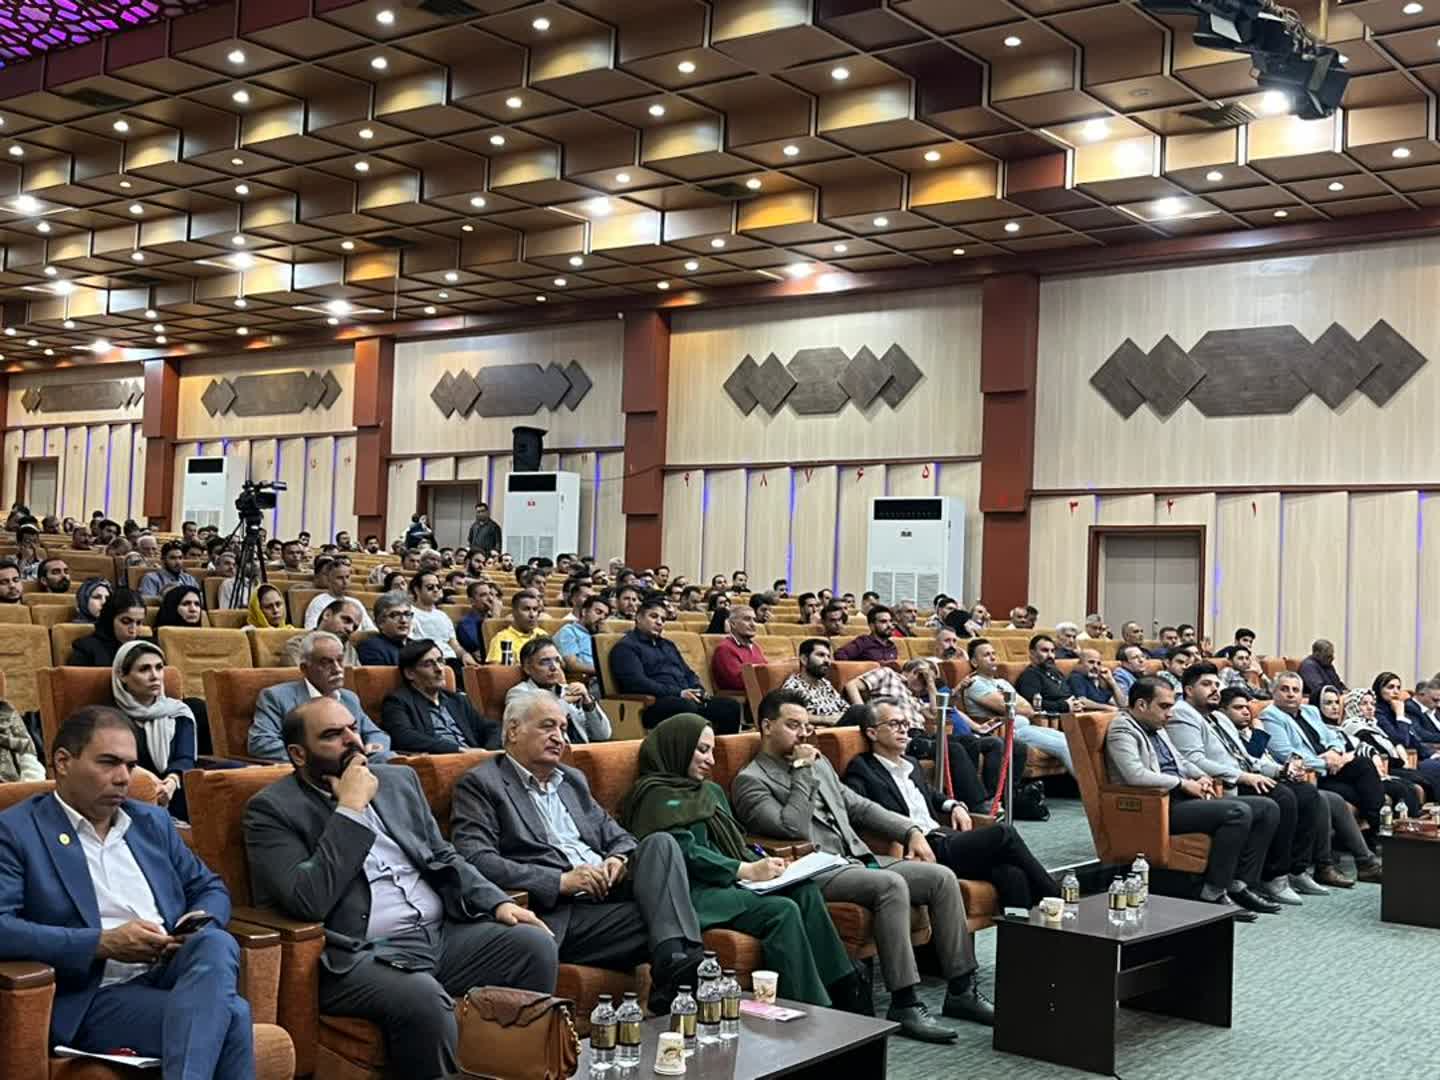 4 برگزاری همایش بزرگ مالیاتی اصناف اصفهان با حمایت 7 اتحادیه بزرگ اصفهانی